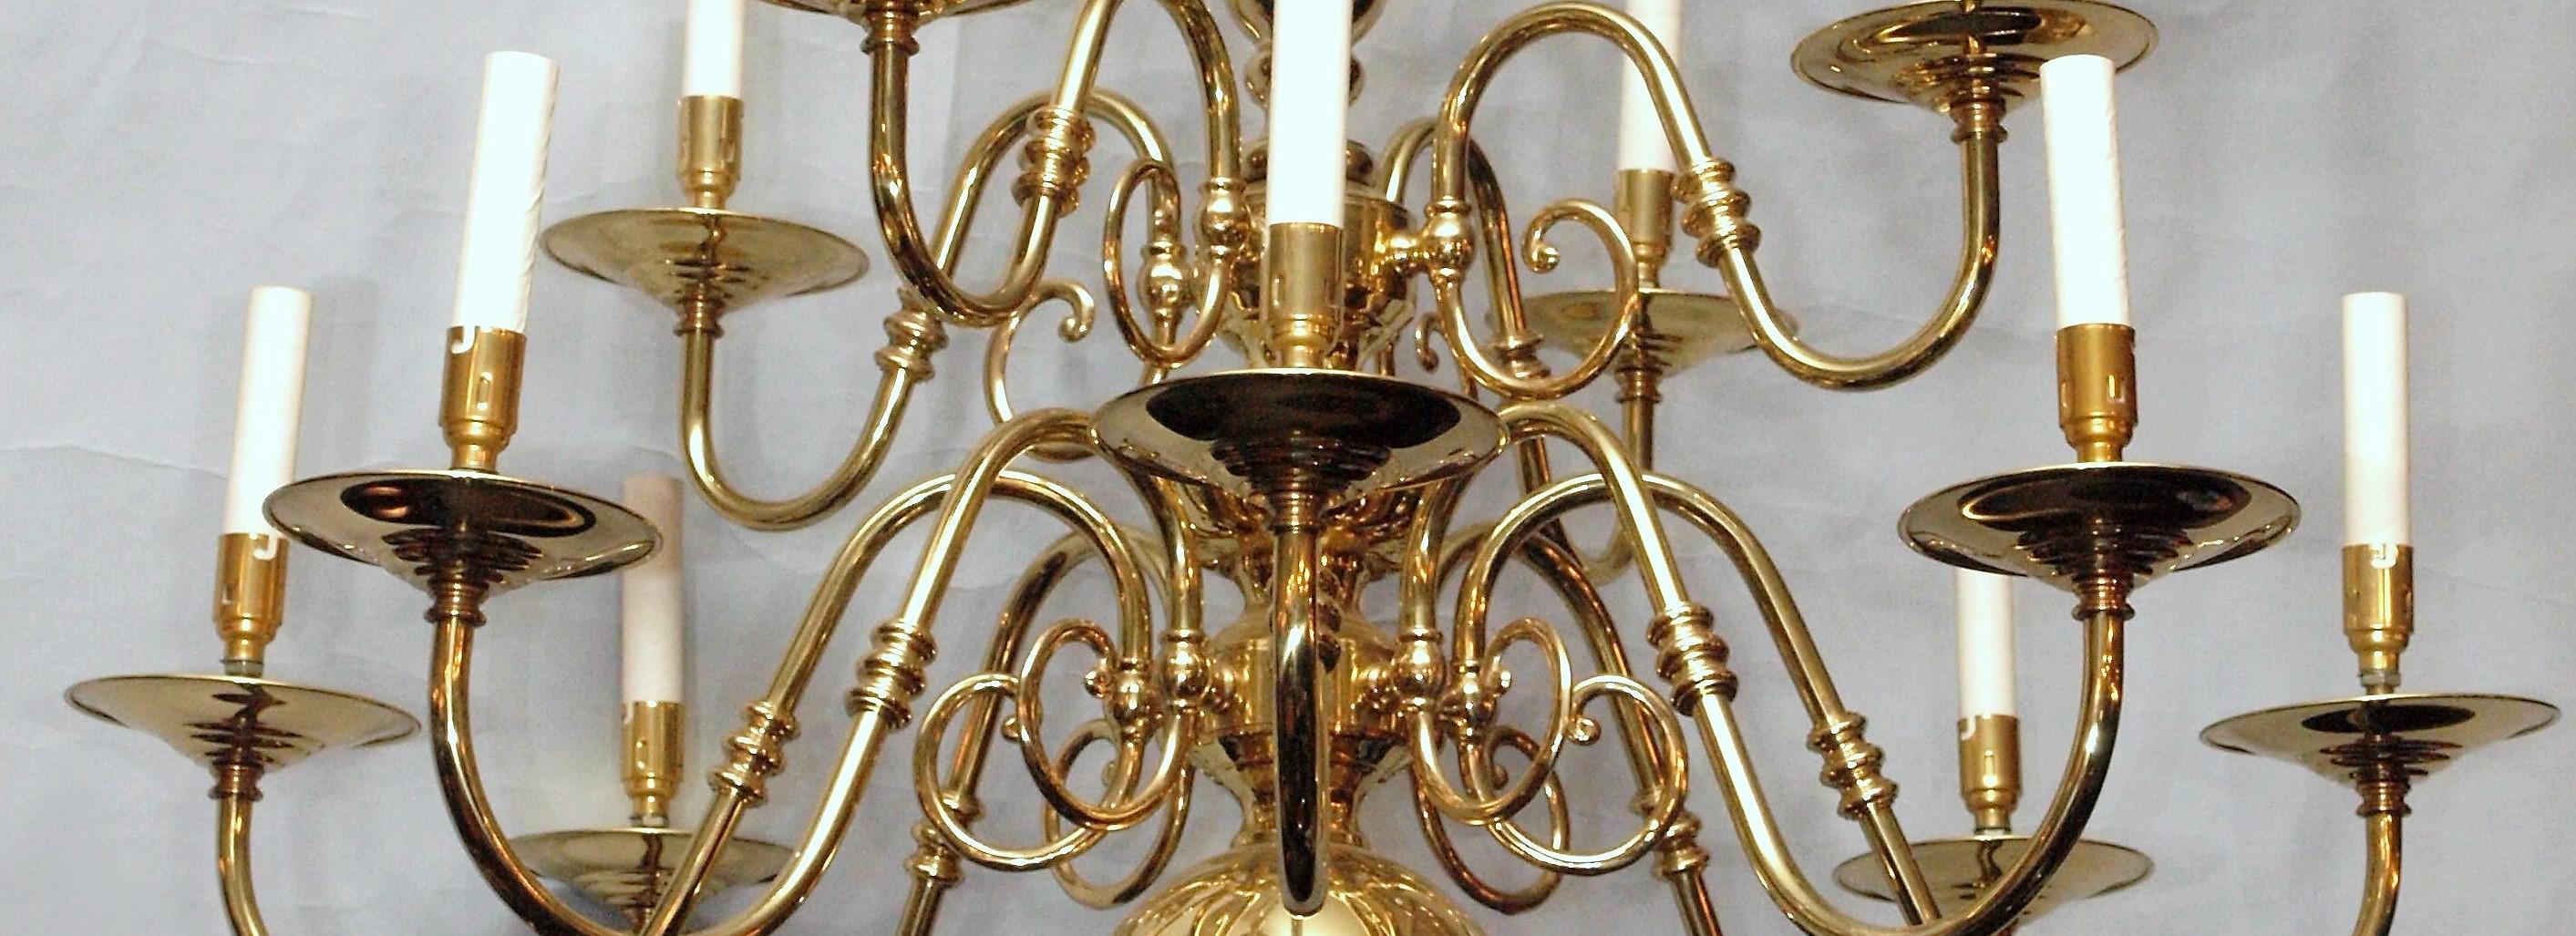 English Williamsburg style twelve-light brass chandelier.